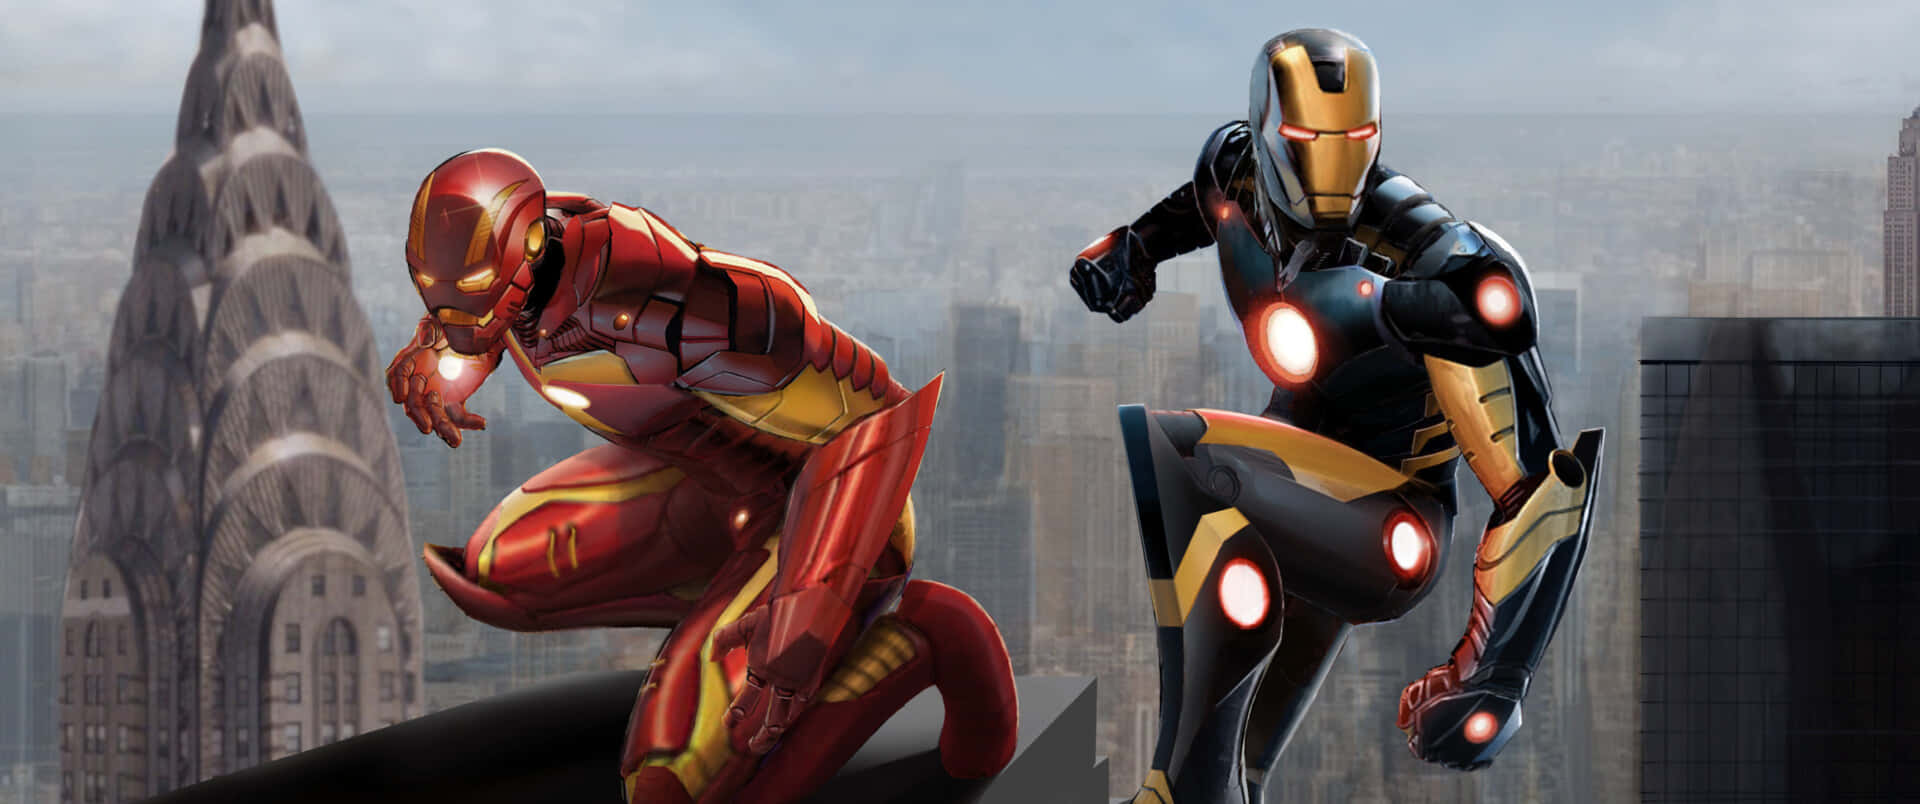 Dospersonajes De Iron Man Están Volando Sobre Una Ciudad.